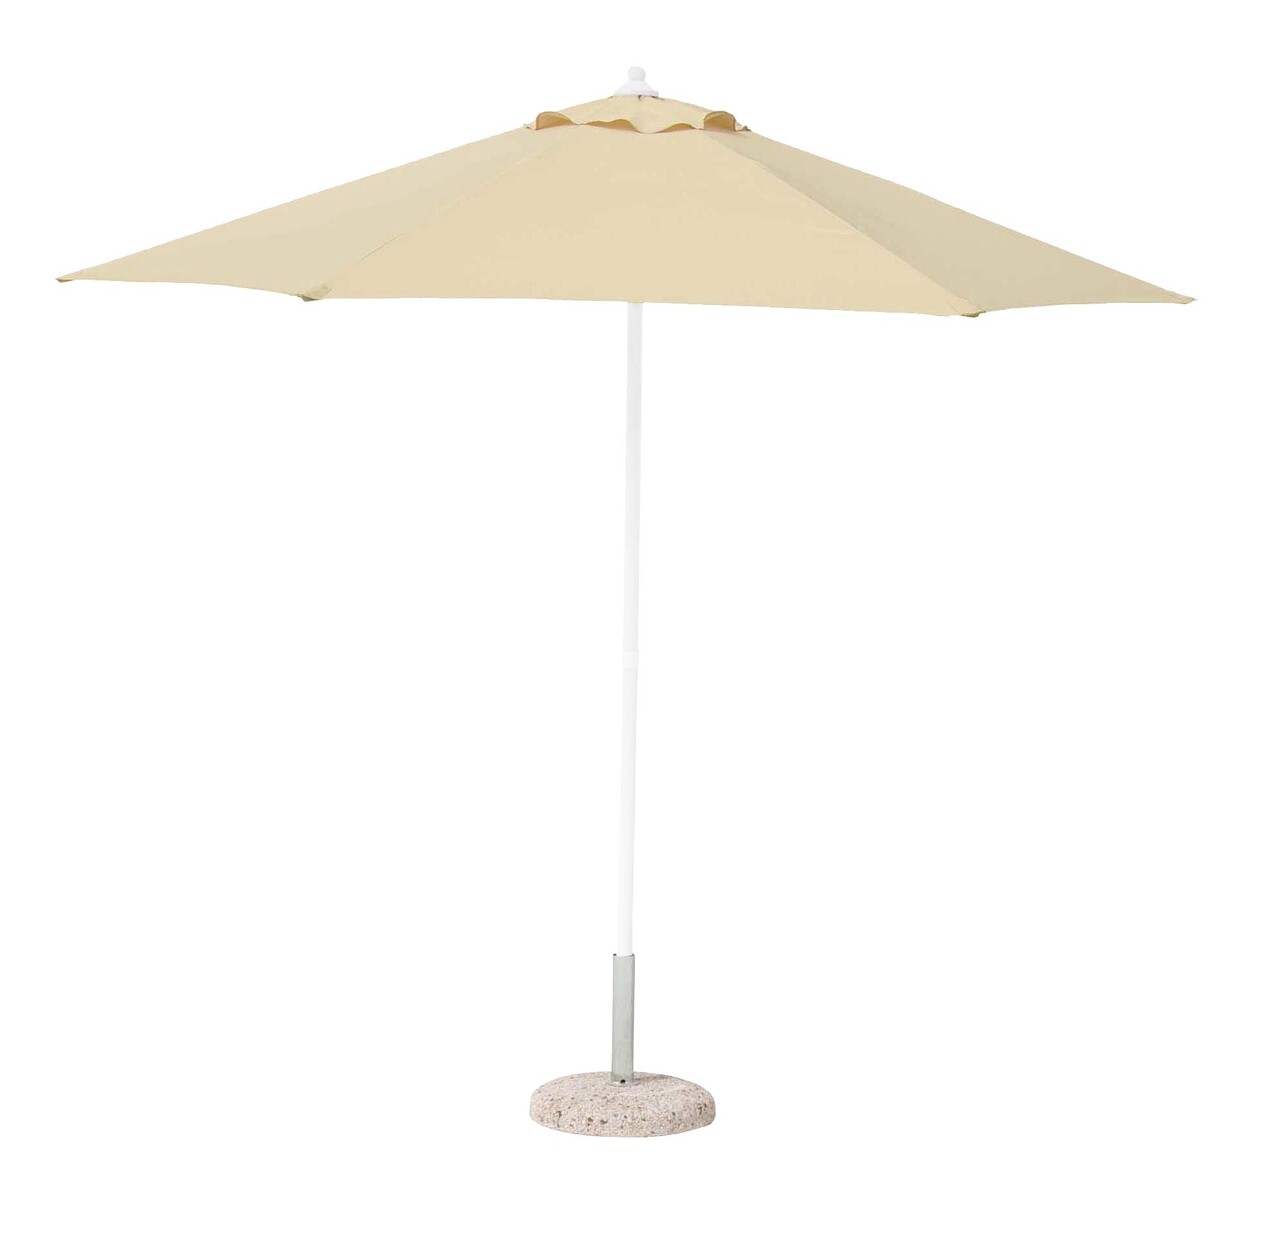 Delfi Kerti/terasz napernyő, Bizzotto, Ø270 cm, oszlop Ø38 mm, acél/poliészter, bézs